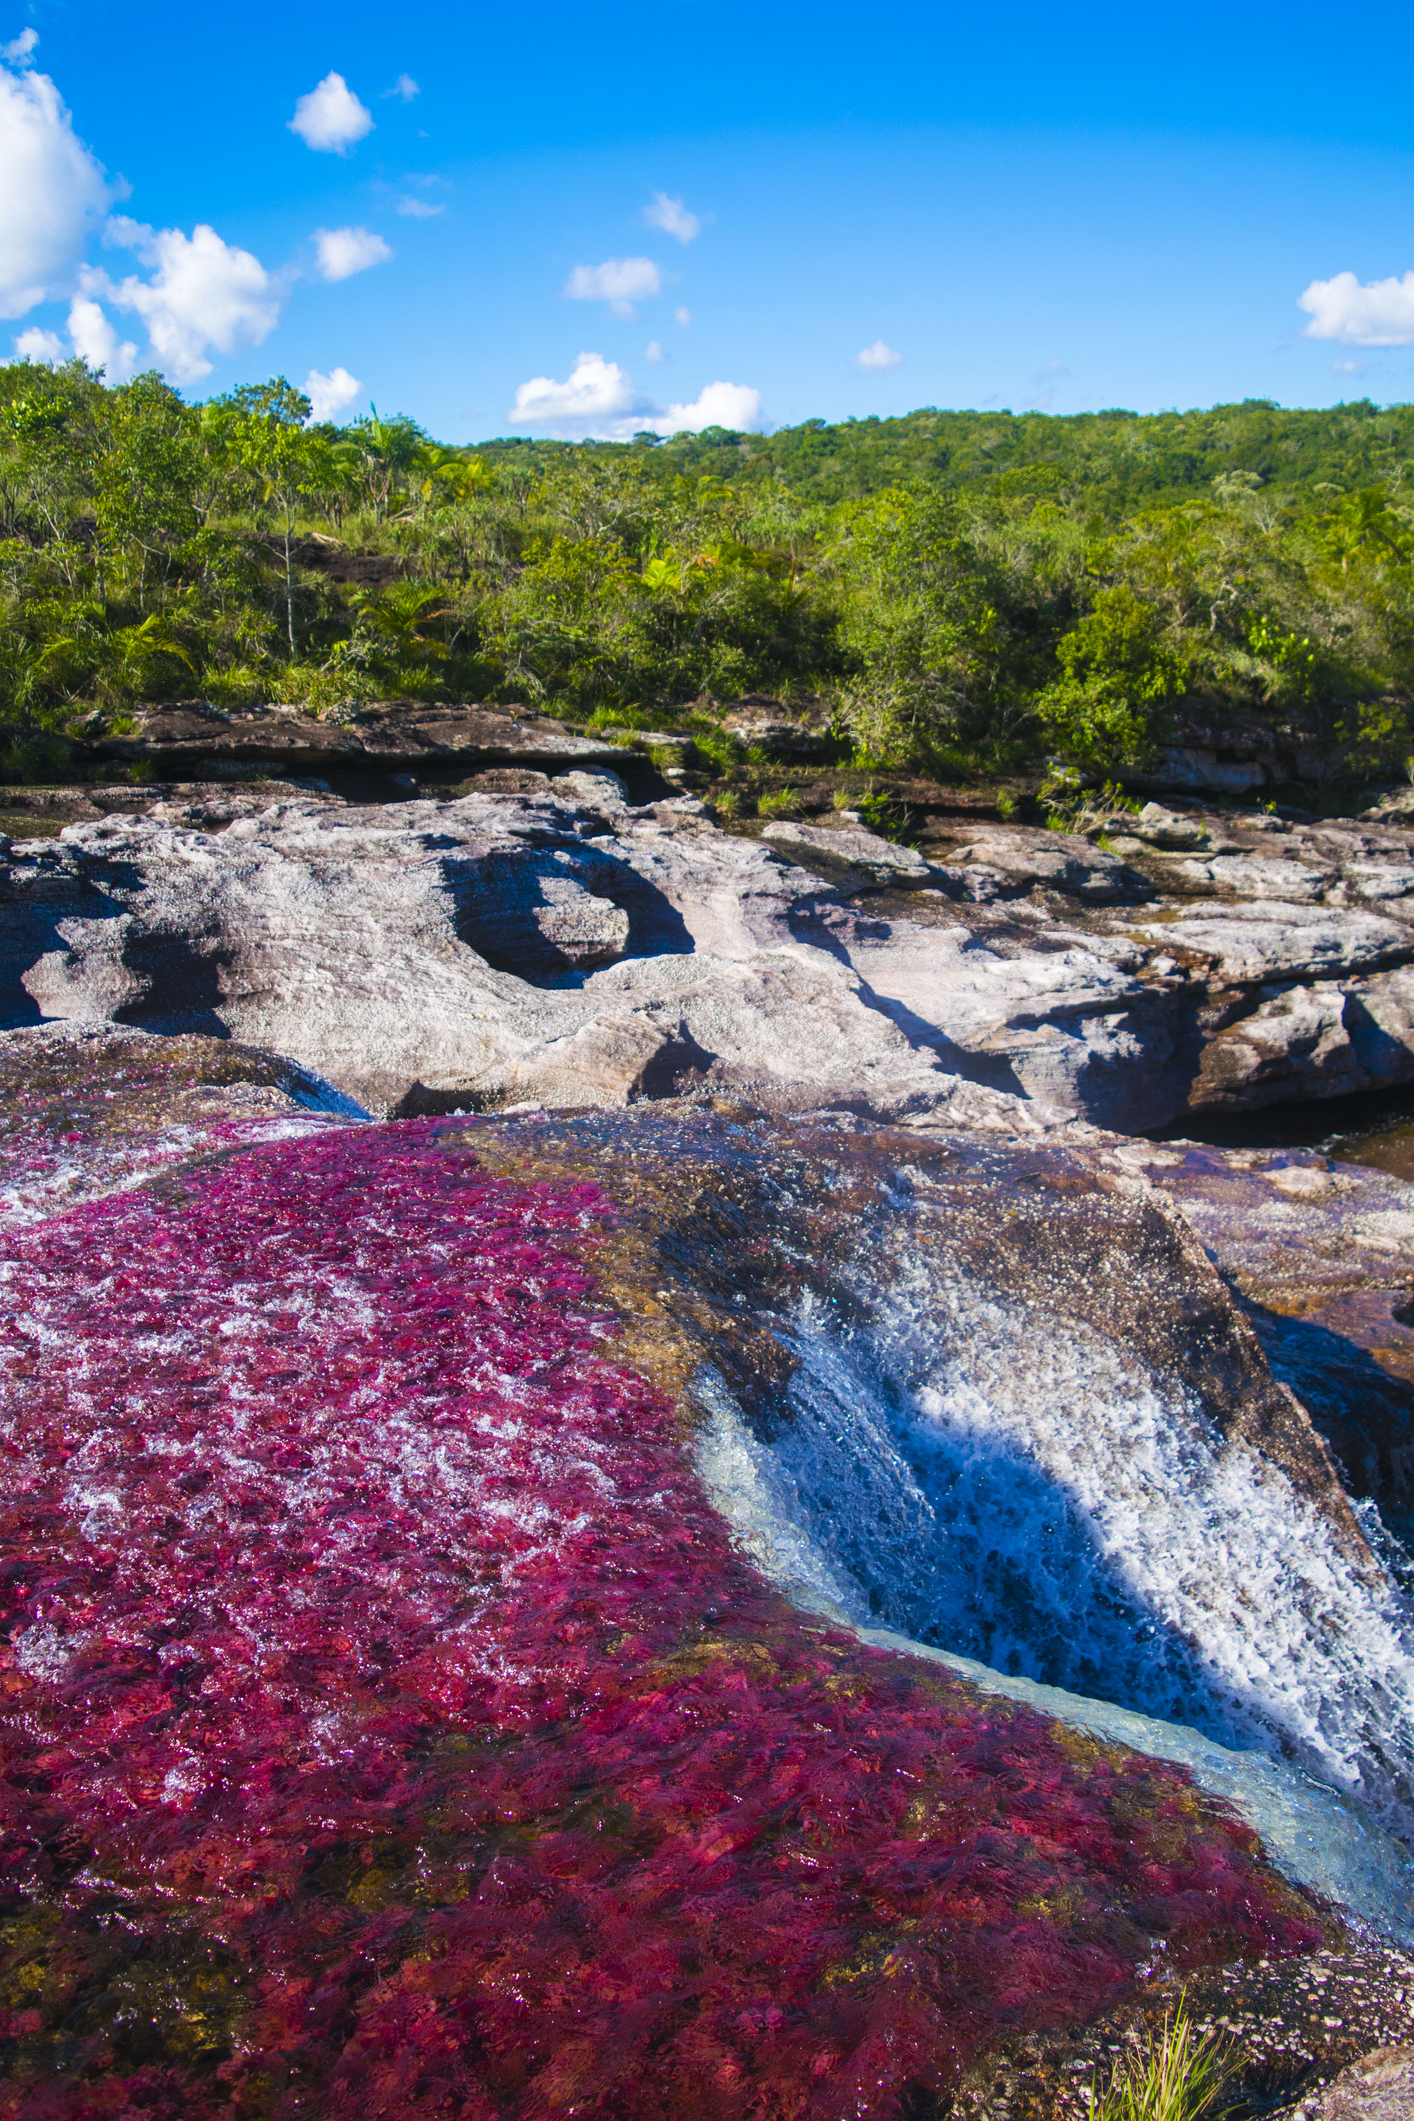 През първата половина от годината Каньо Кристалес в Колумбия прилича на най-обикновена река. Между юни и декември обаче тя придобива един прекрасен многоцветен оттенък. Различни видове водорасли променят цветовете си и стават червени, сини, жълти, оранжеви и зелени. Местните жители я наричат Реката на петте цвята.